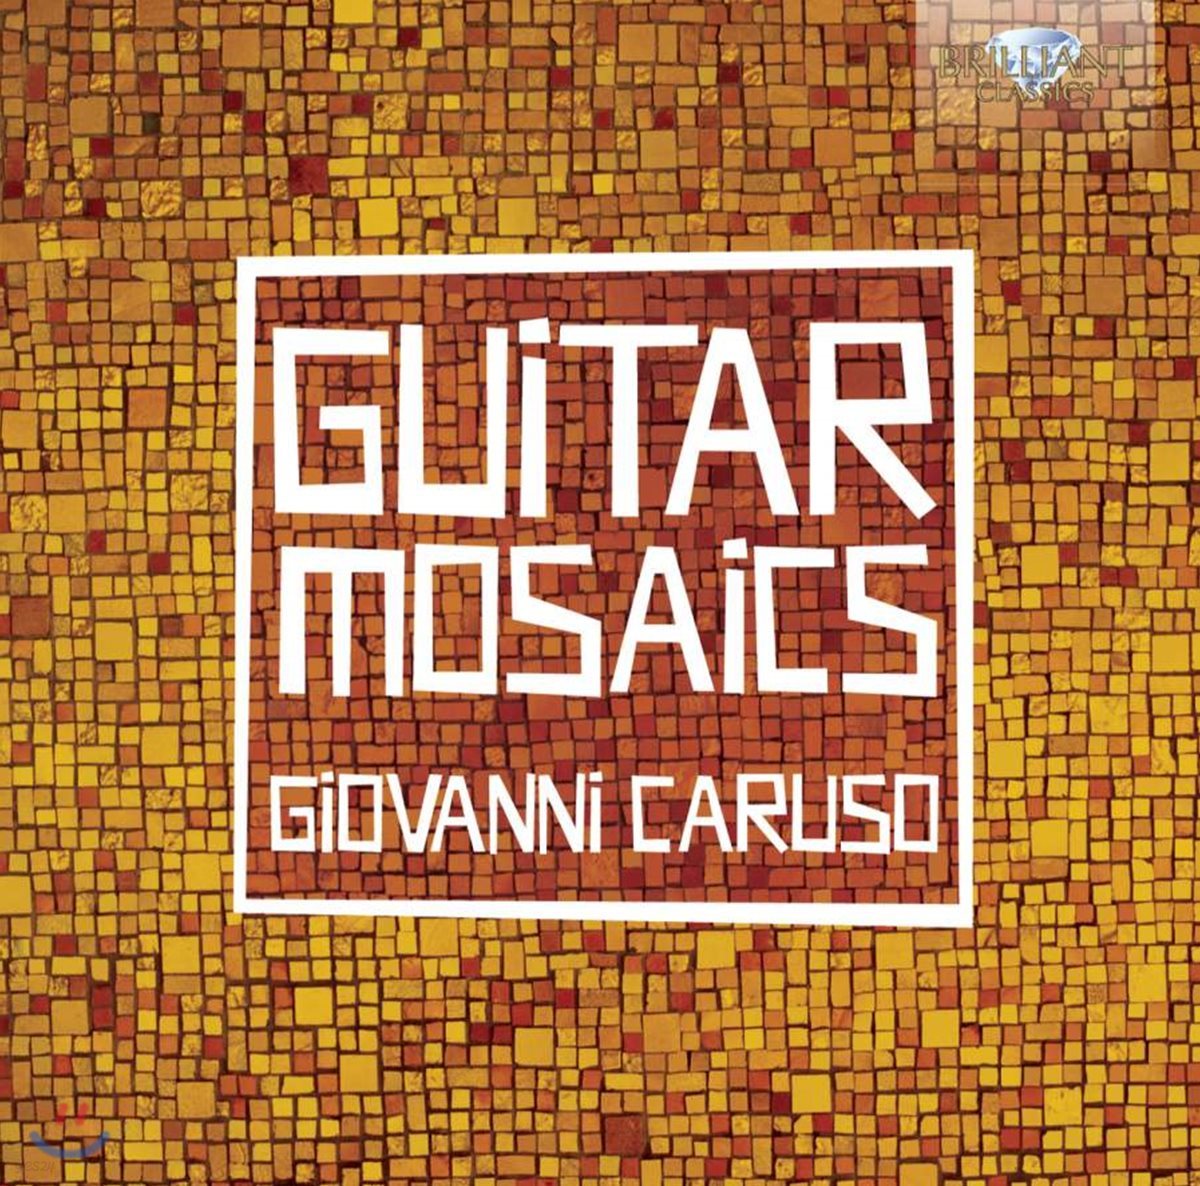 Giovanni Caruso 기타 독주집 (Guitar Mosaics)